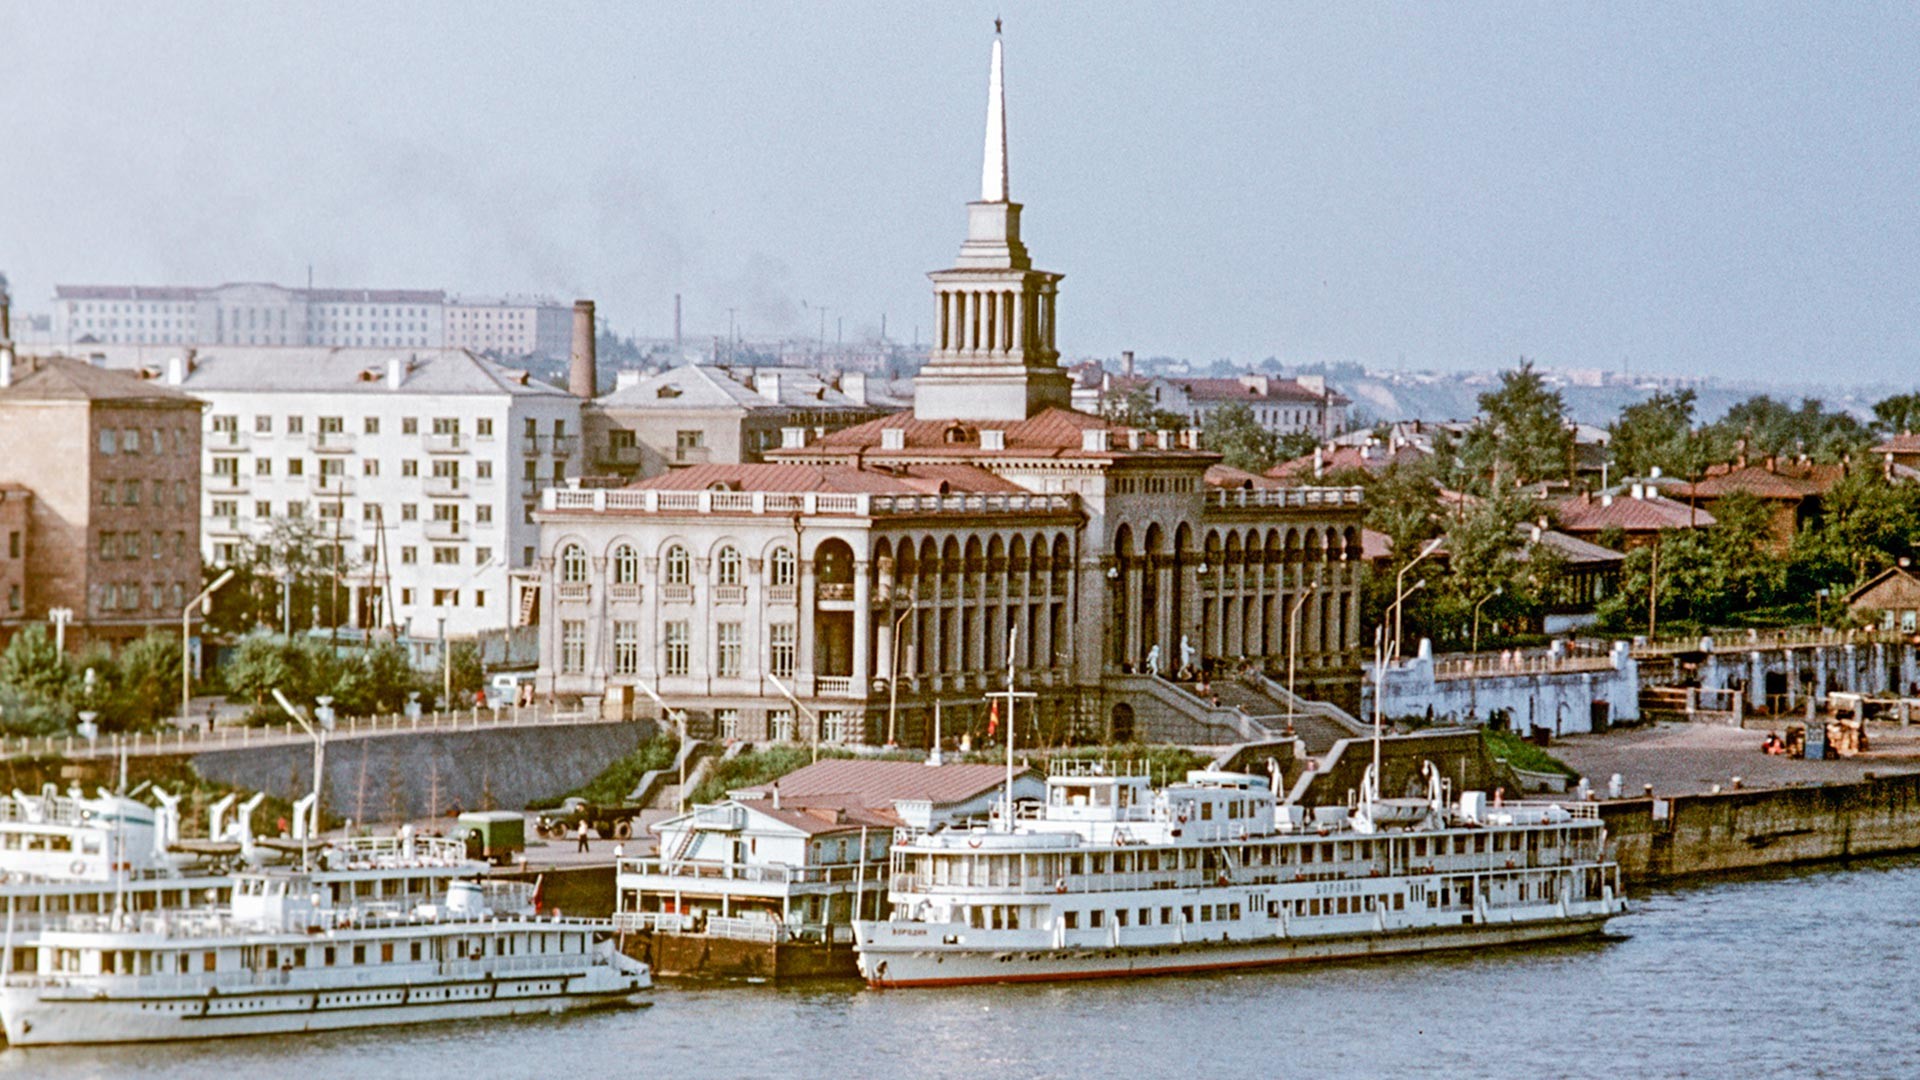 Краснојарска речна лука. Здање речног терминала саграђено је 1952. године по пројекту архитекте Александра Голубјева.